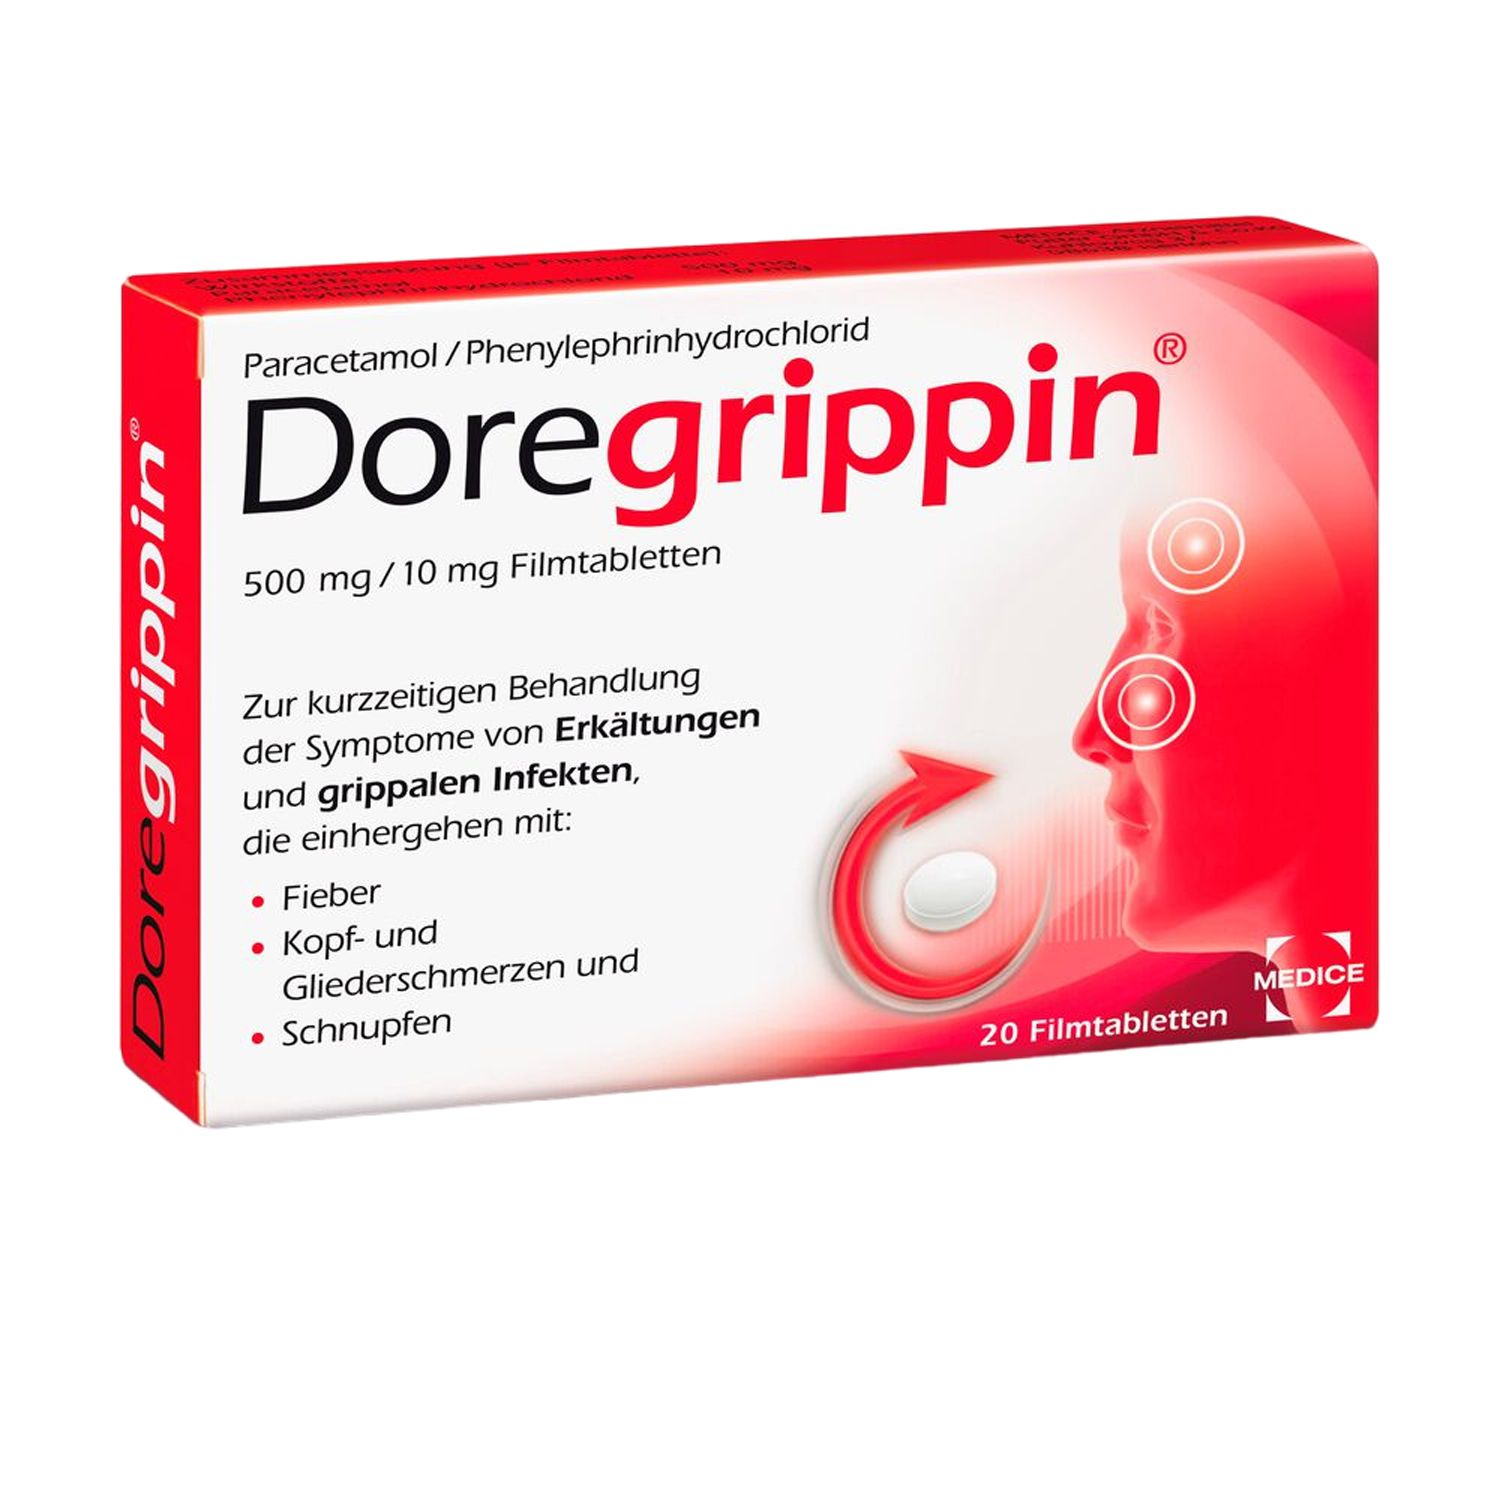 Doregrippin Tabletten bei Erkältungsschmerzen